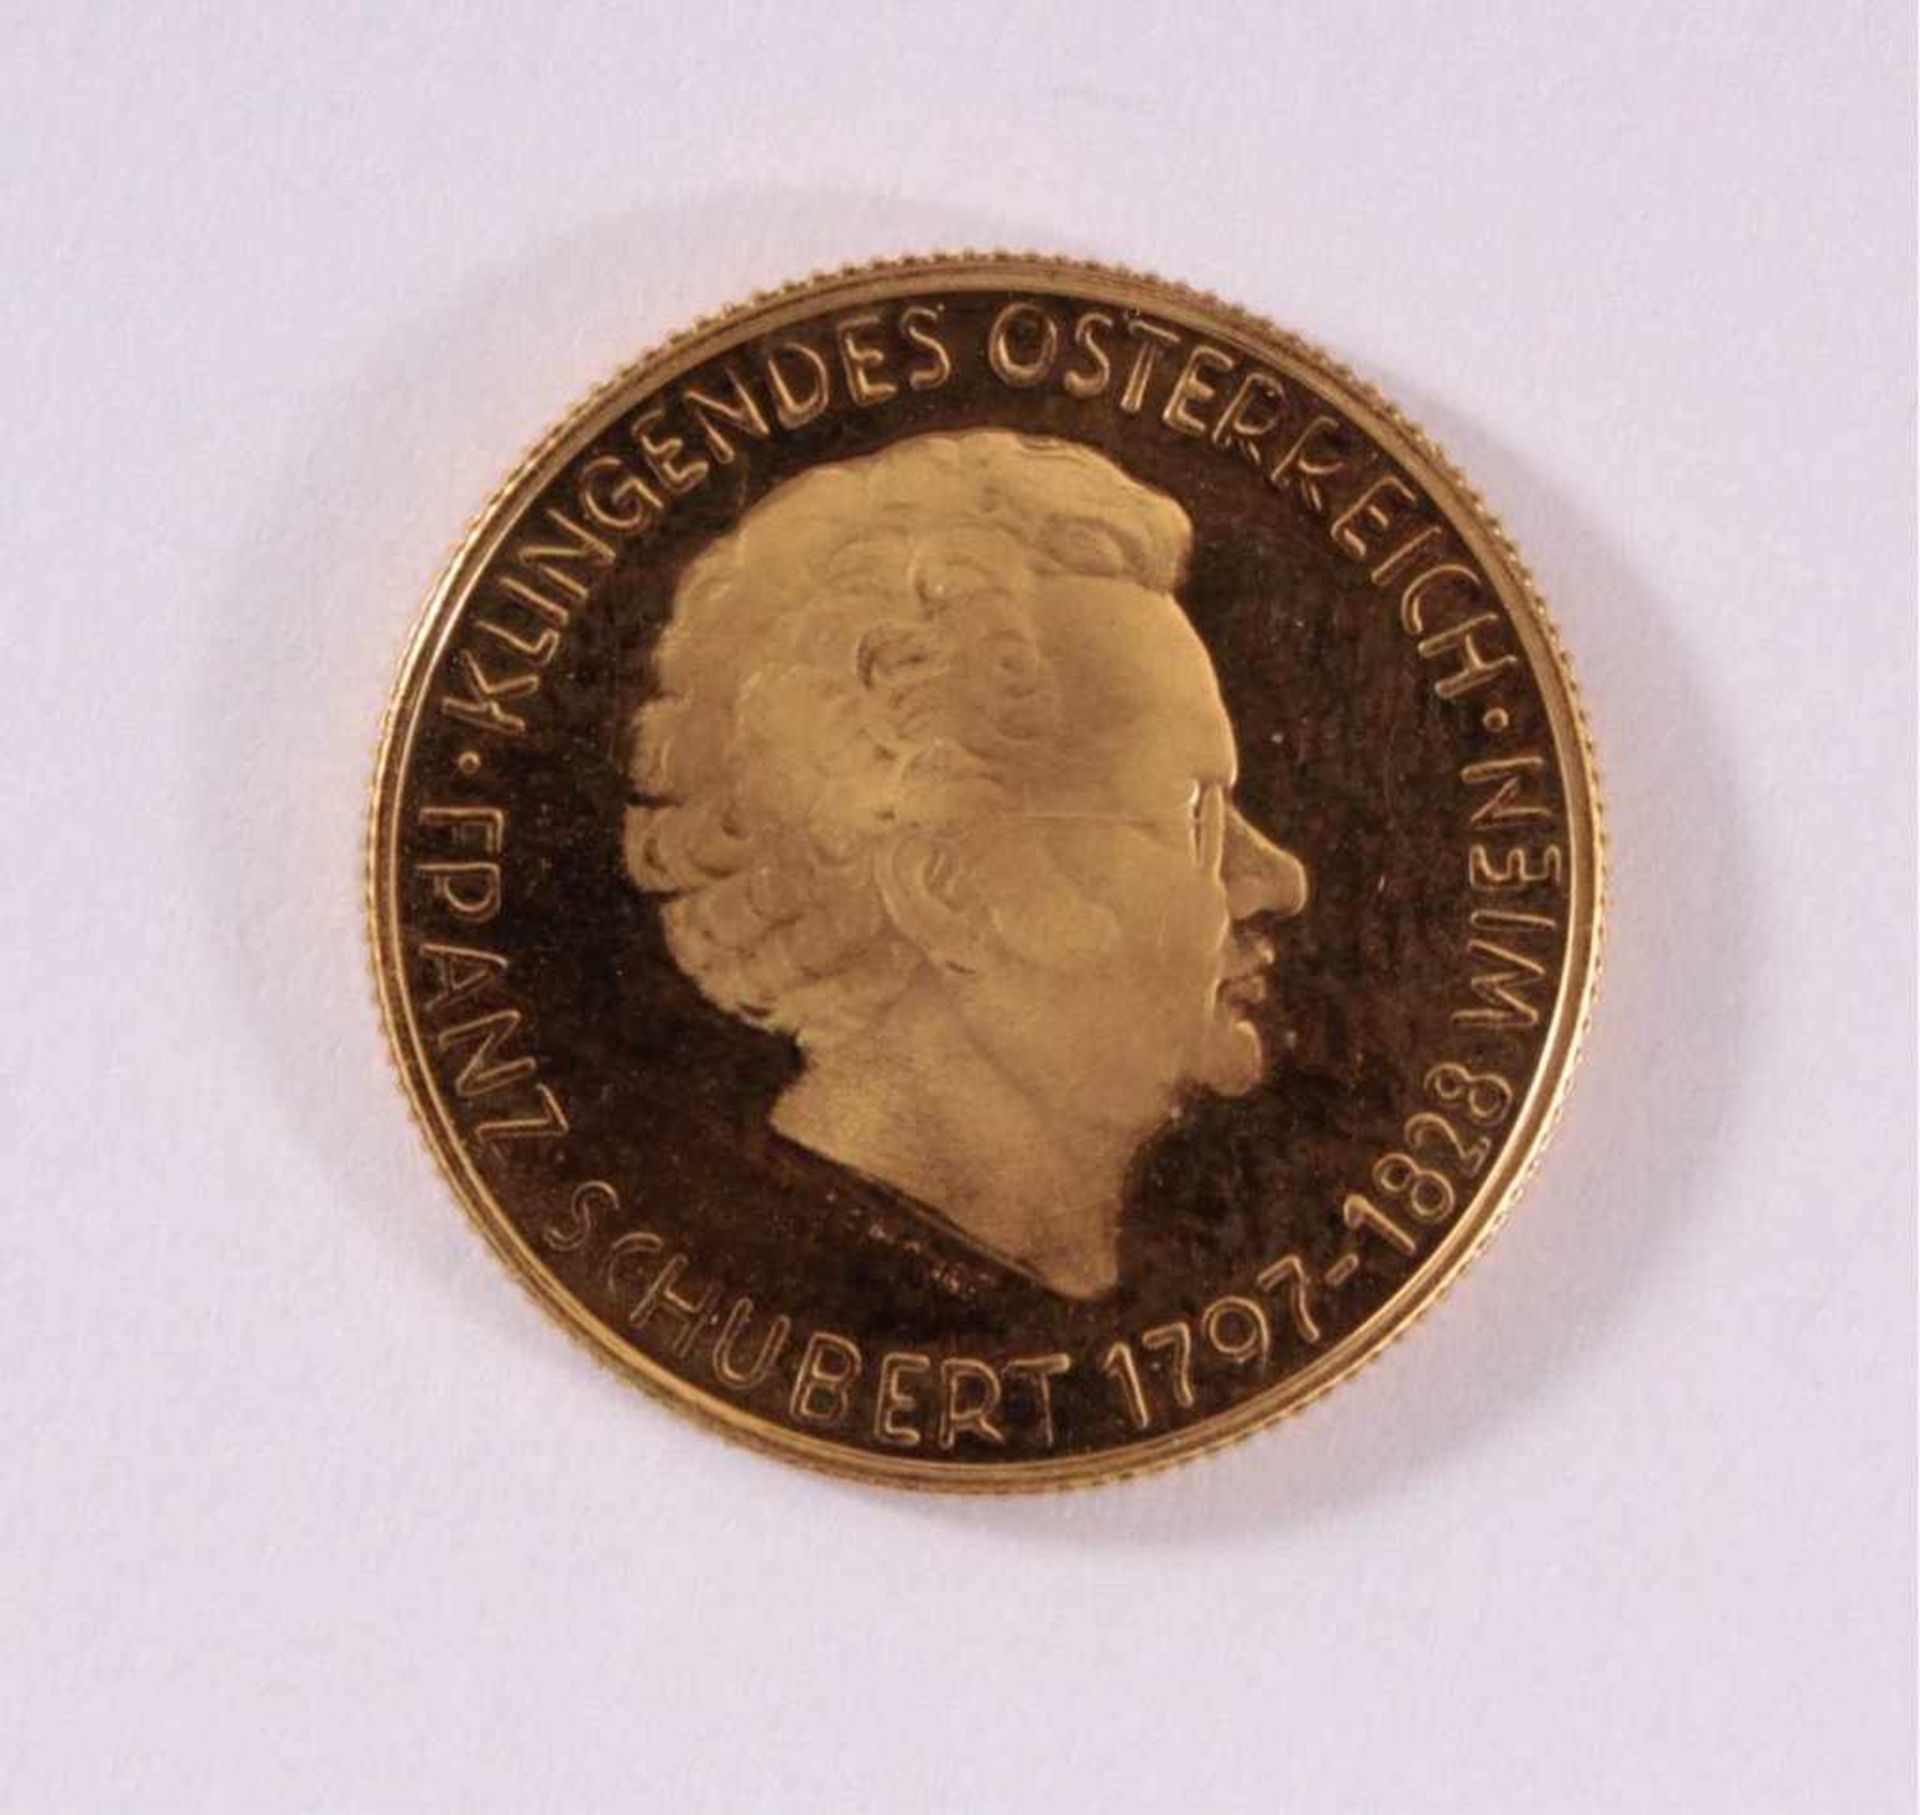 Goldmedaille 900/000 GG. Franz SchubertD-2,1 cm, 5 g